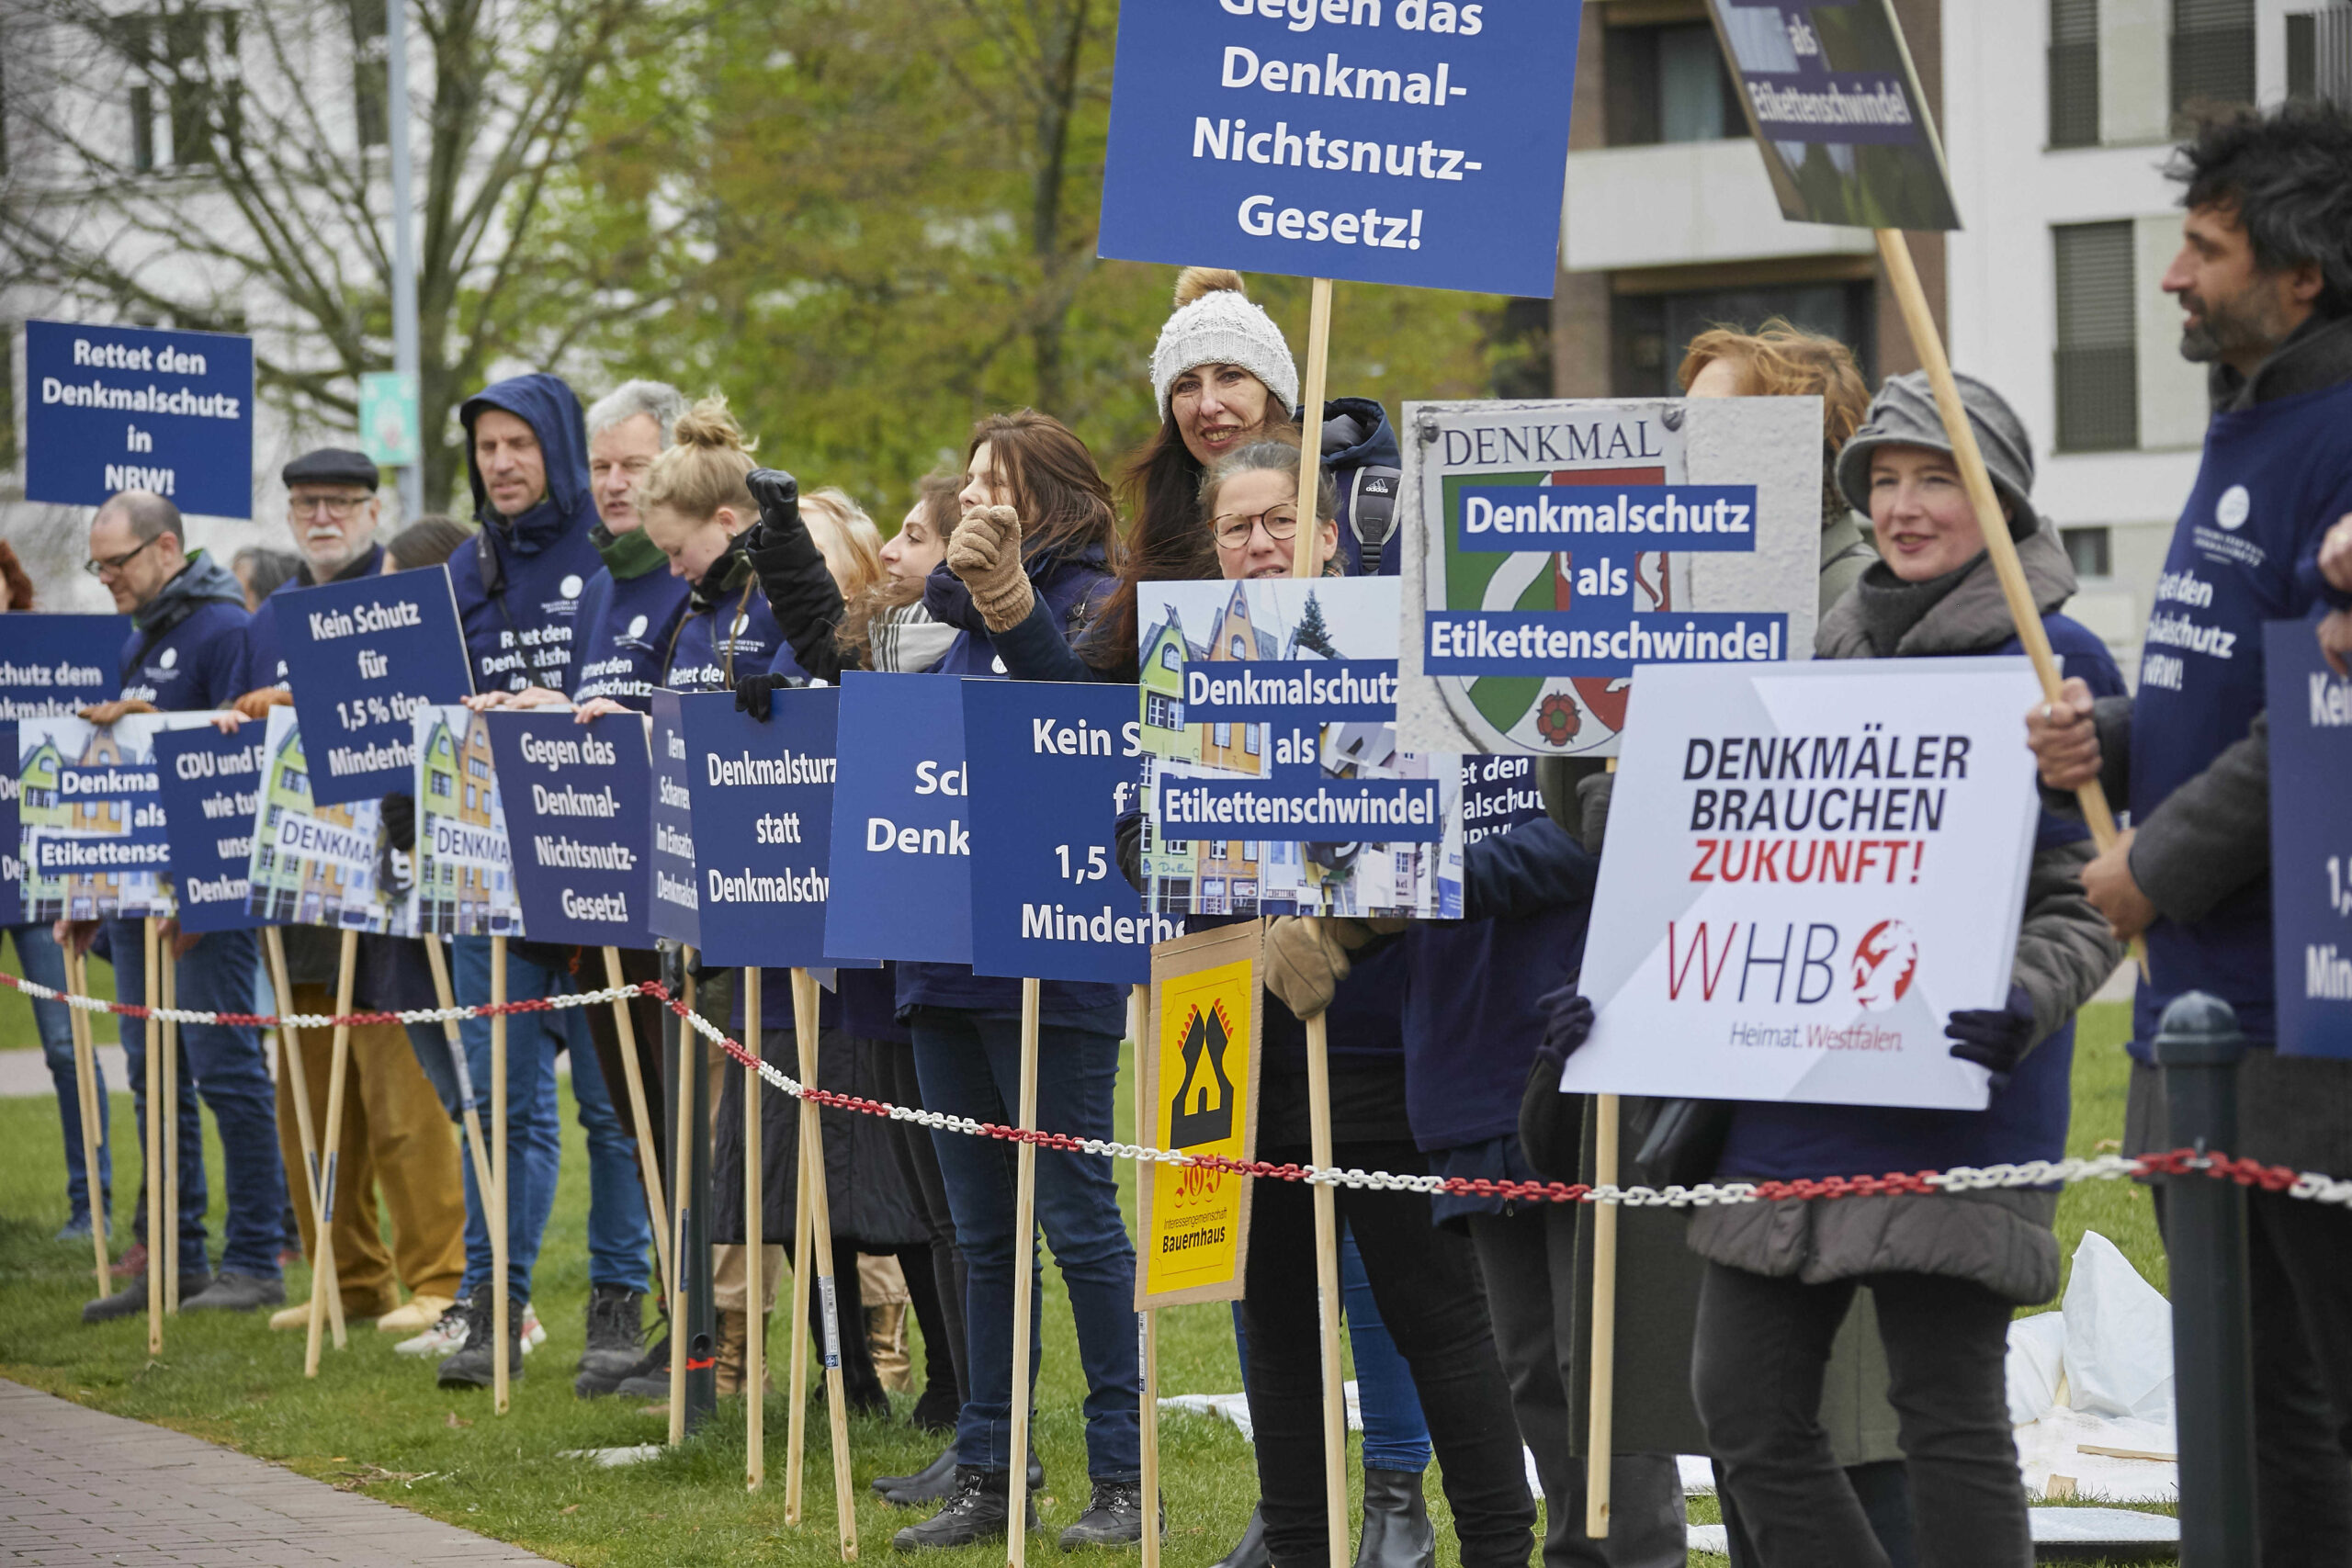 Teilnehmer der Demonstration gegen das Denkmal-Nicht-Schutzgesetz vor dem Düsseldorfer Landtag am 06.04.2022. Foto: Roland Rossner